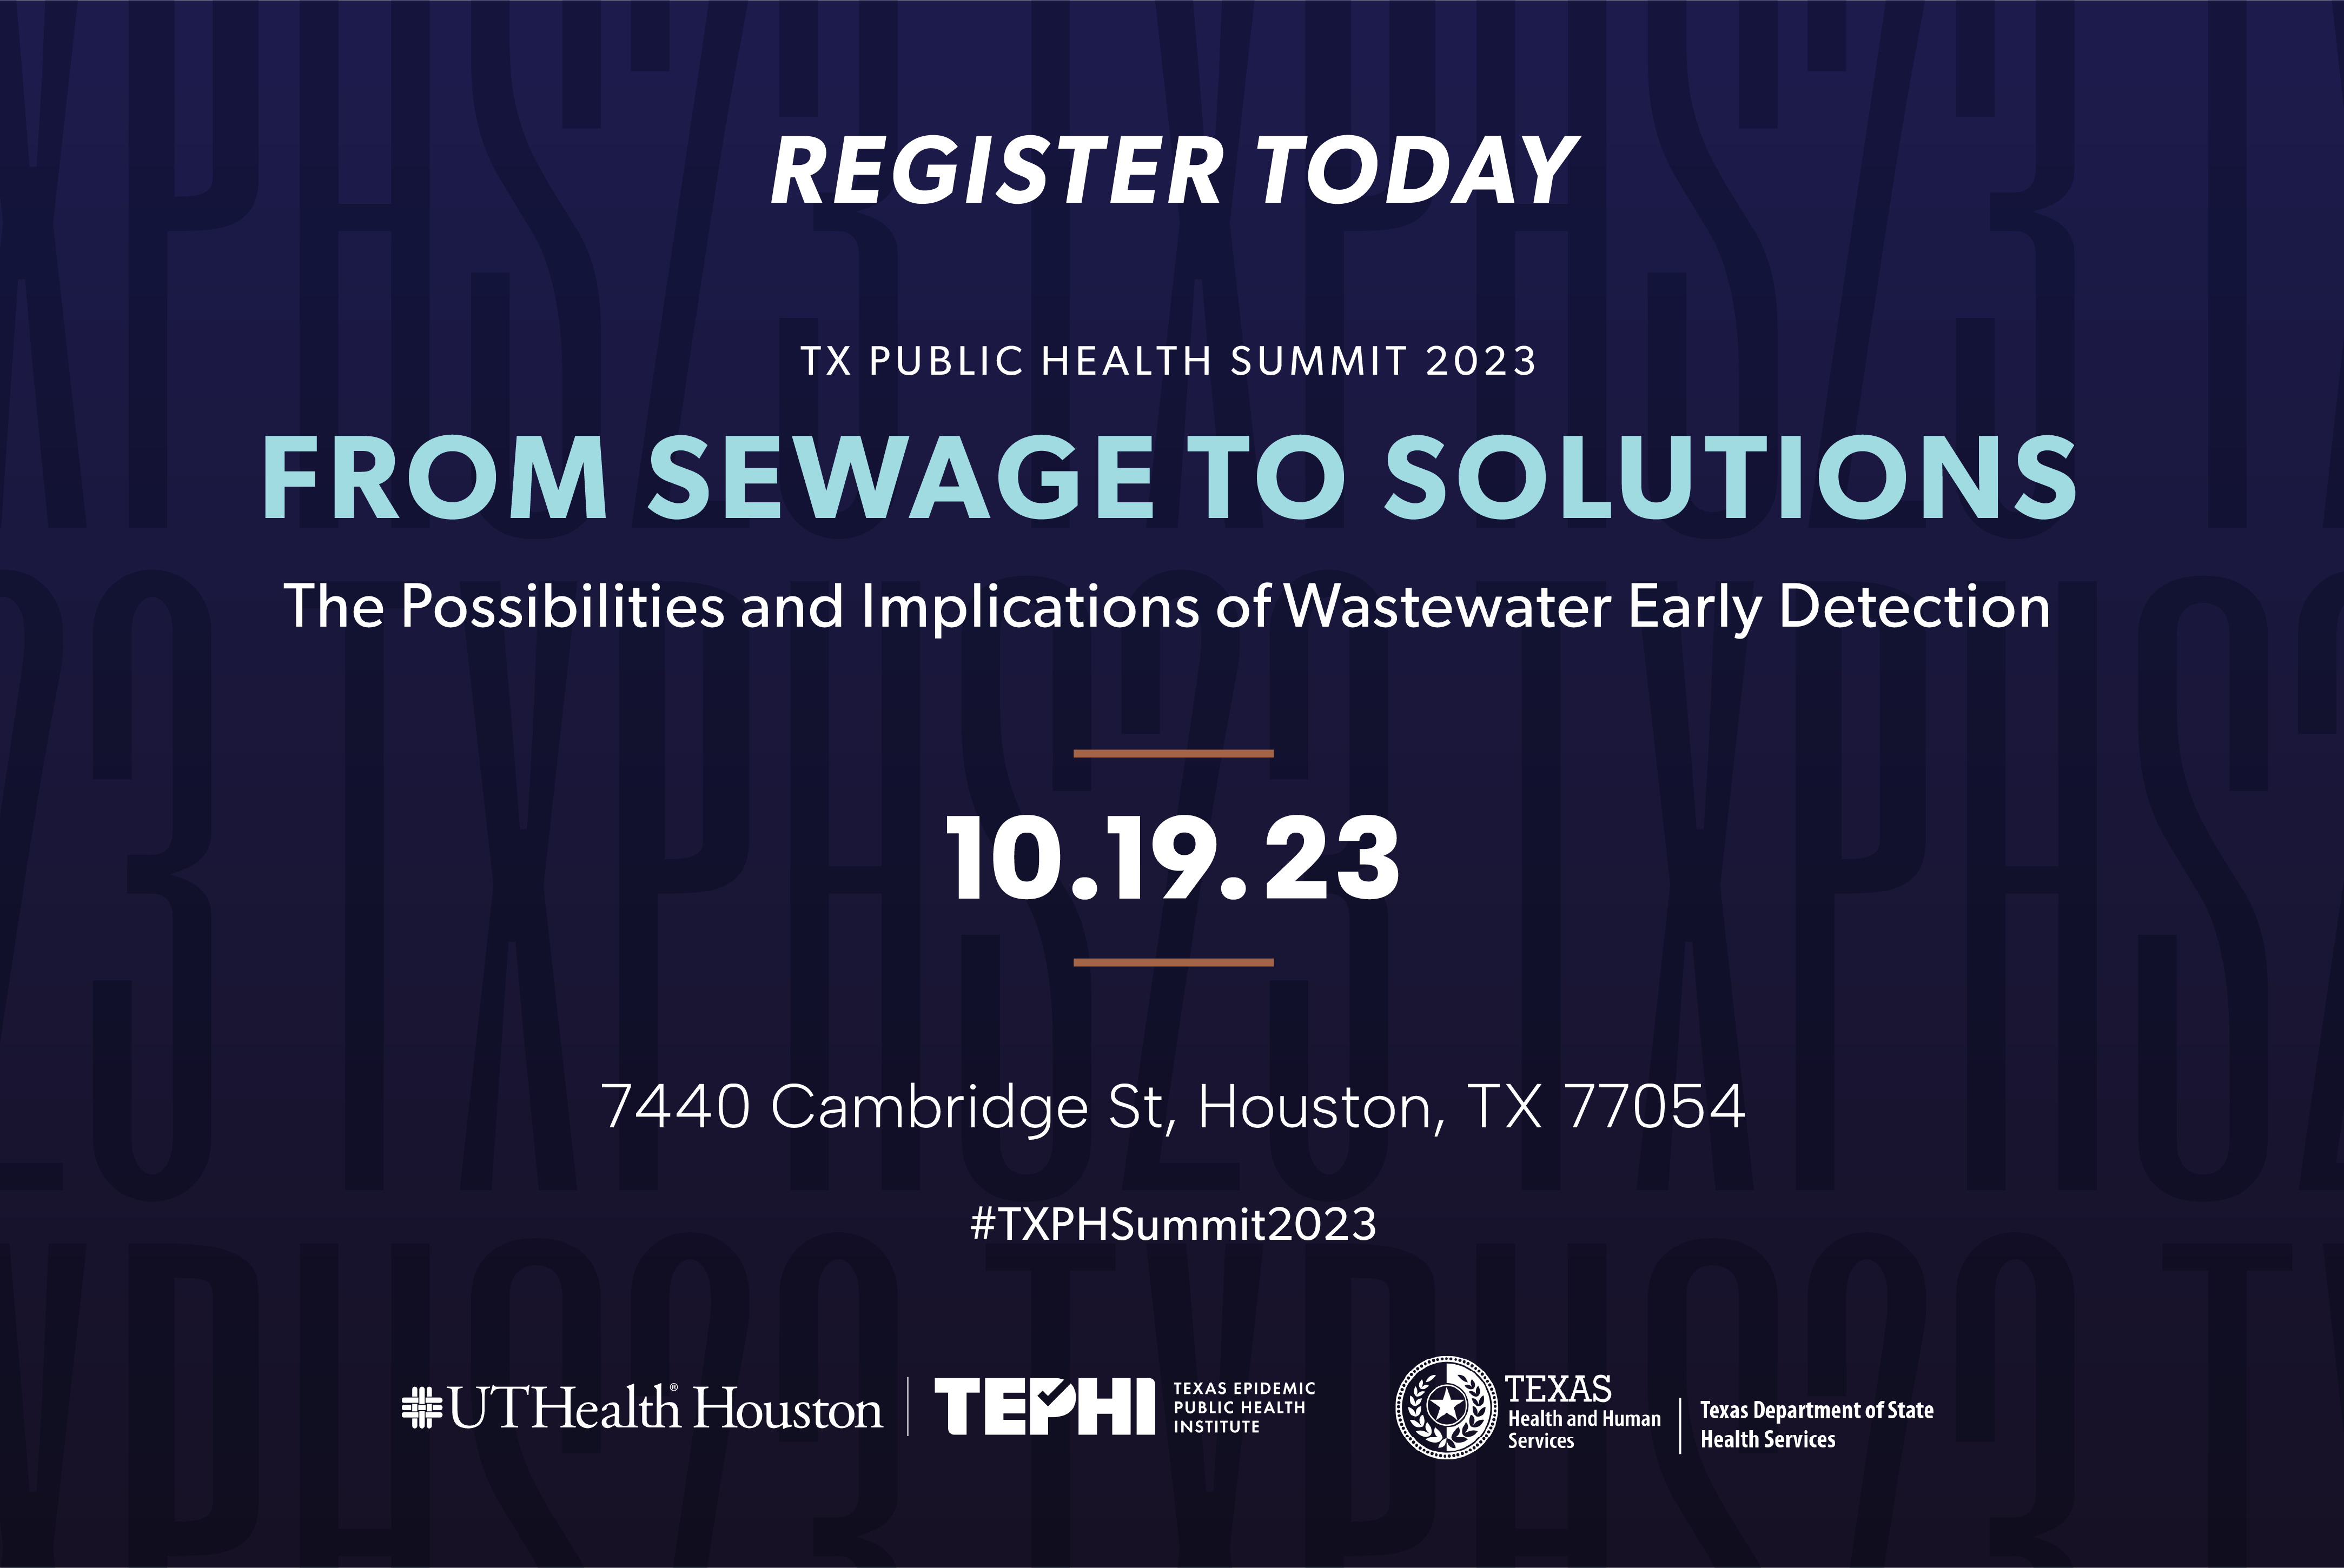 Texas Public Health Summit 2023